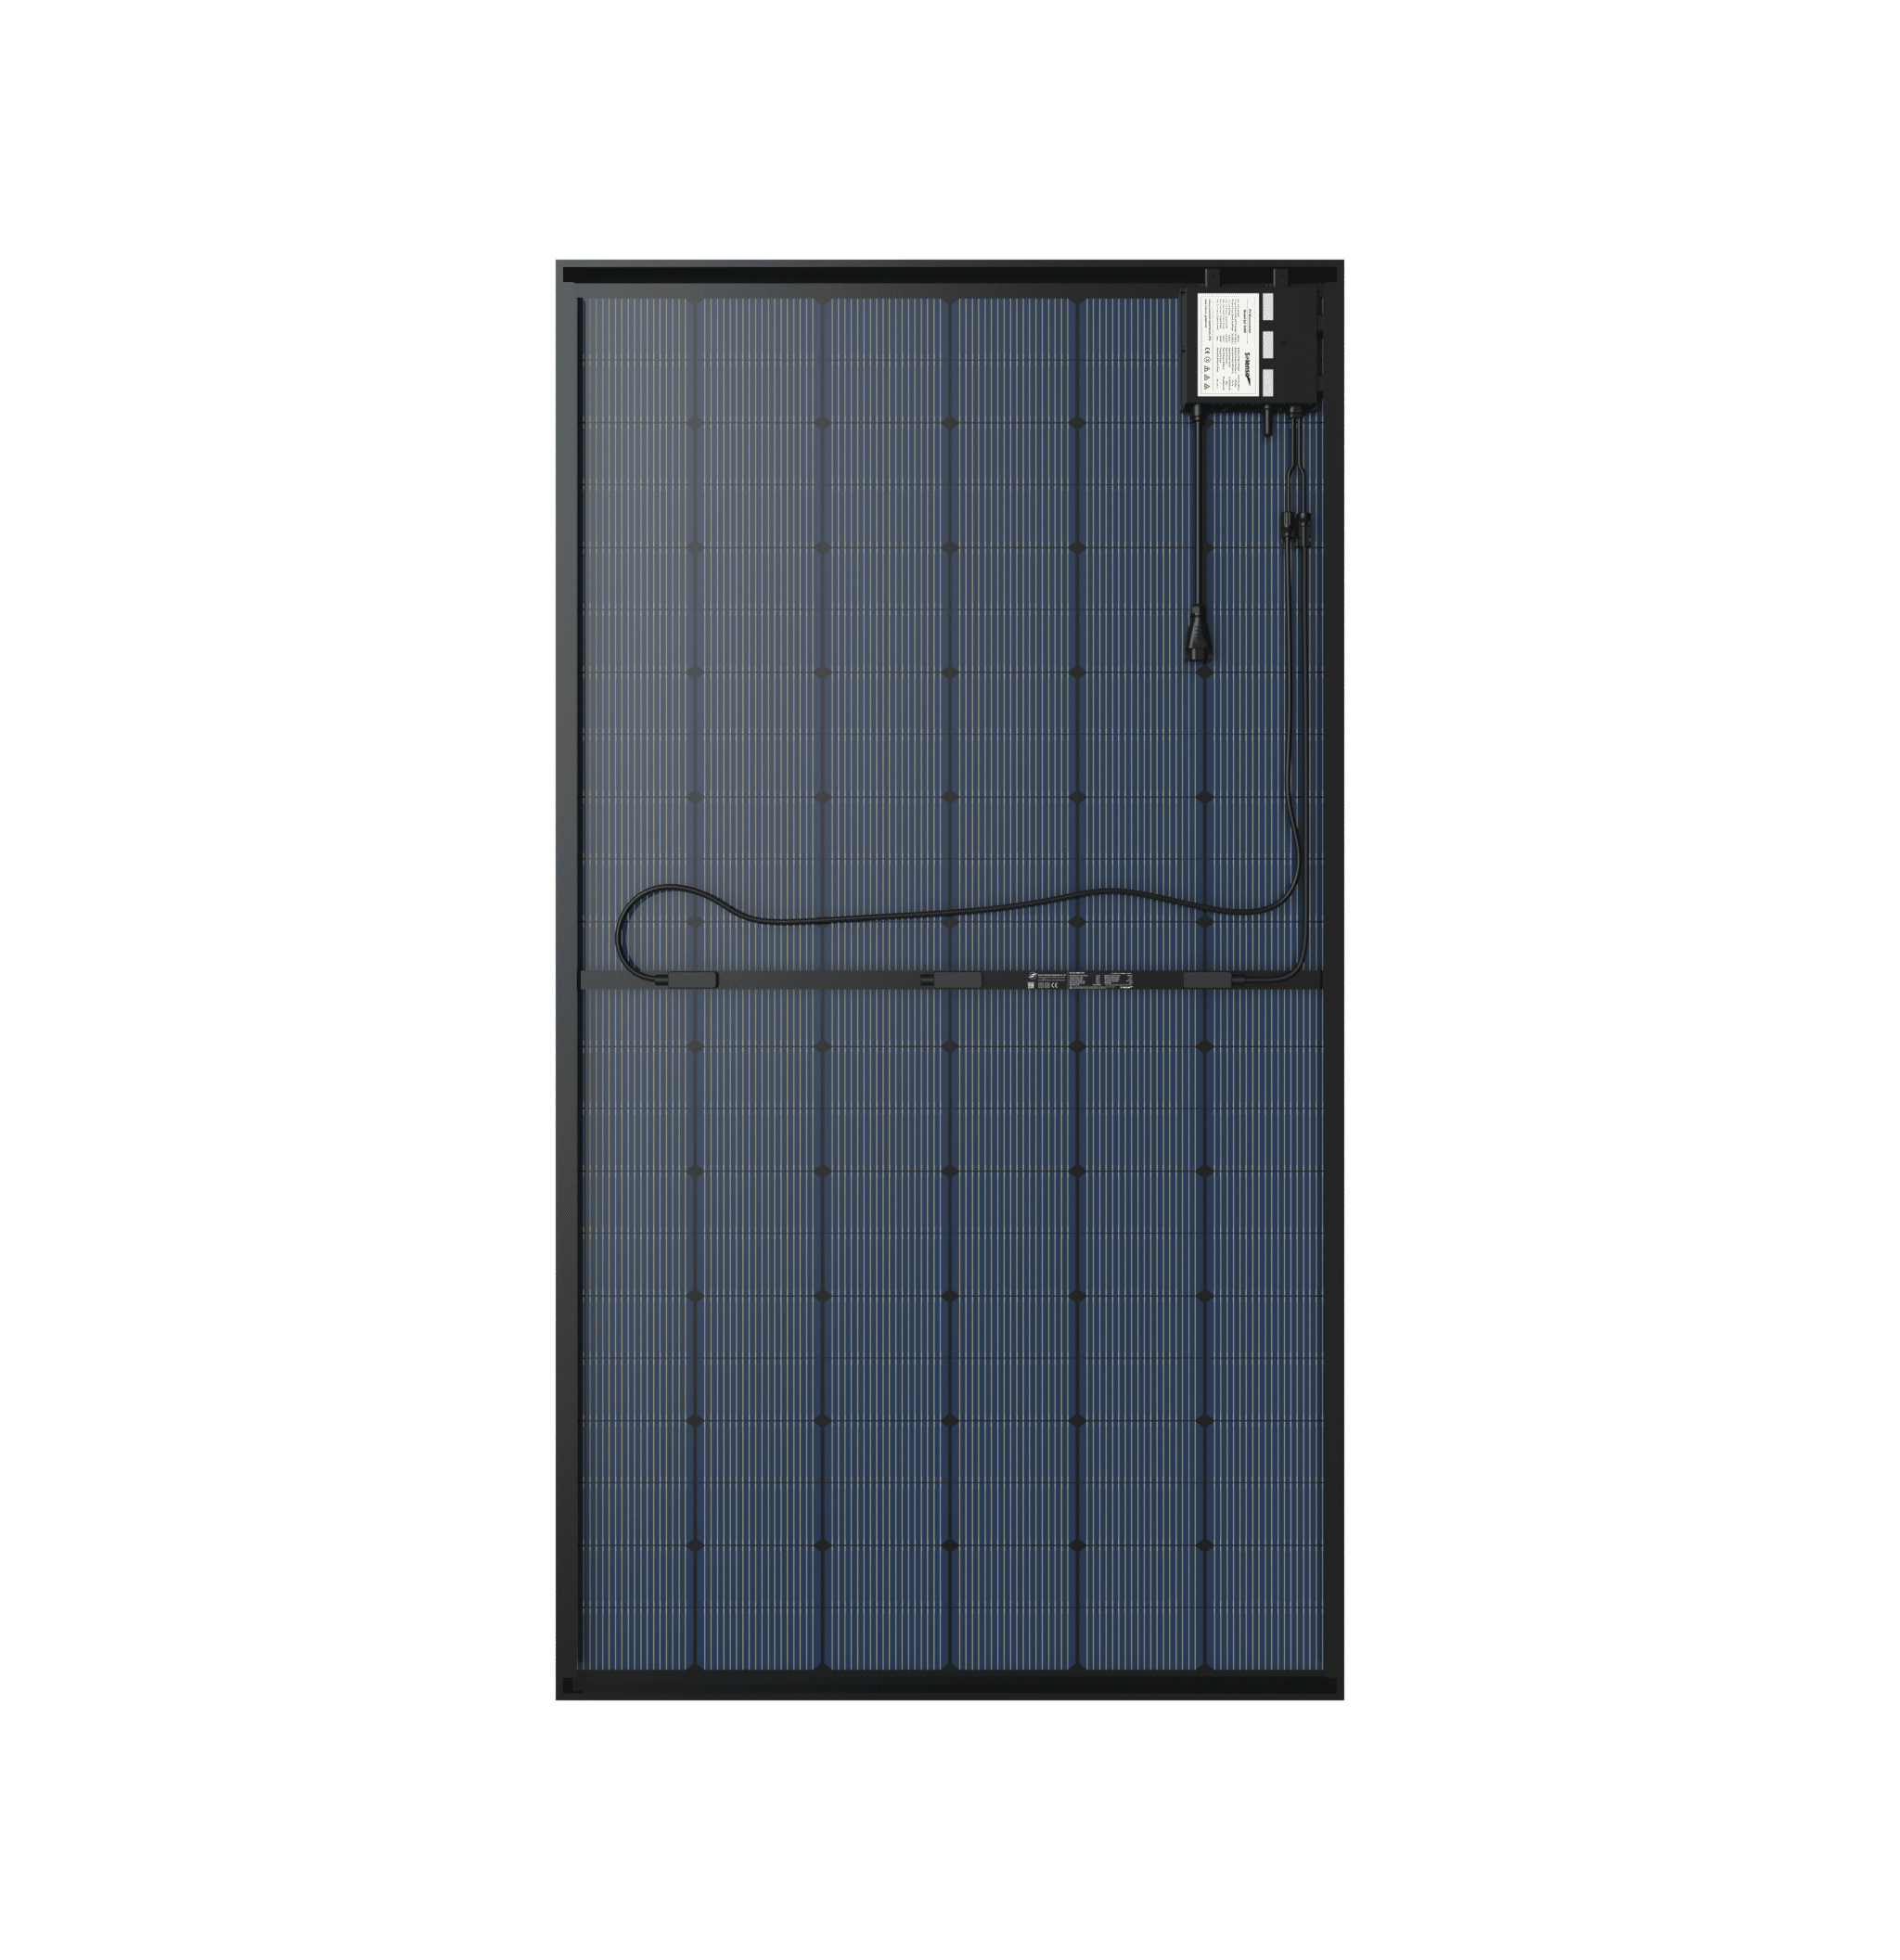 panneau solaire Duonergy IBC 430 AC vue de dos